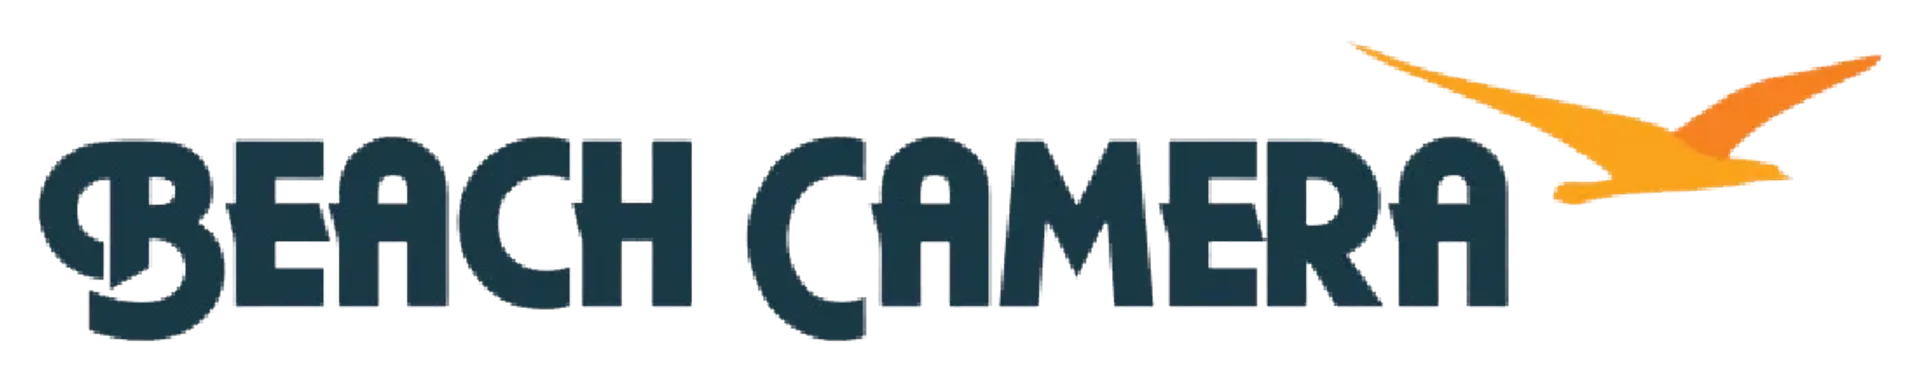 BEACH CAMERA logo